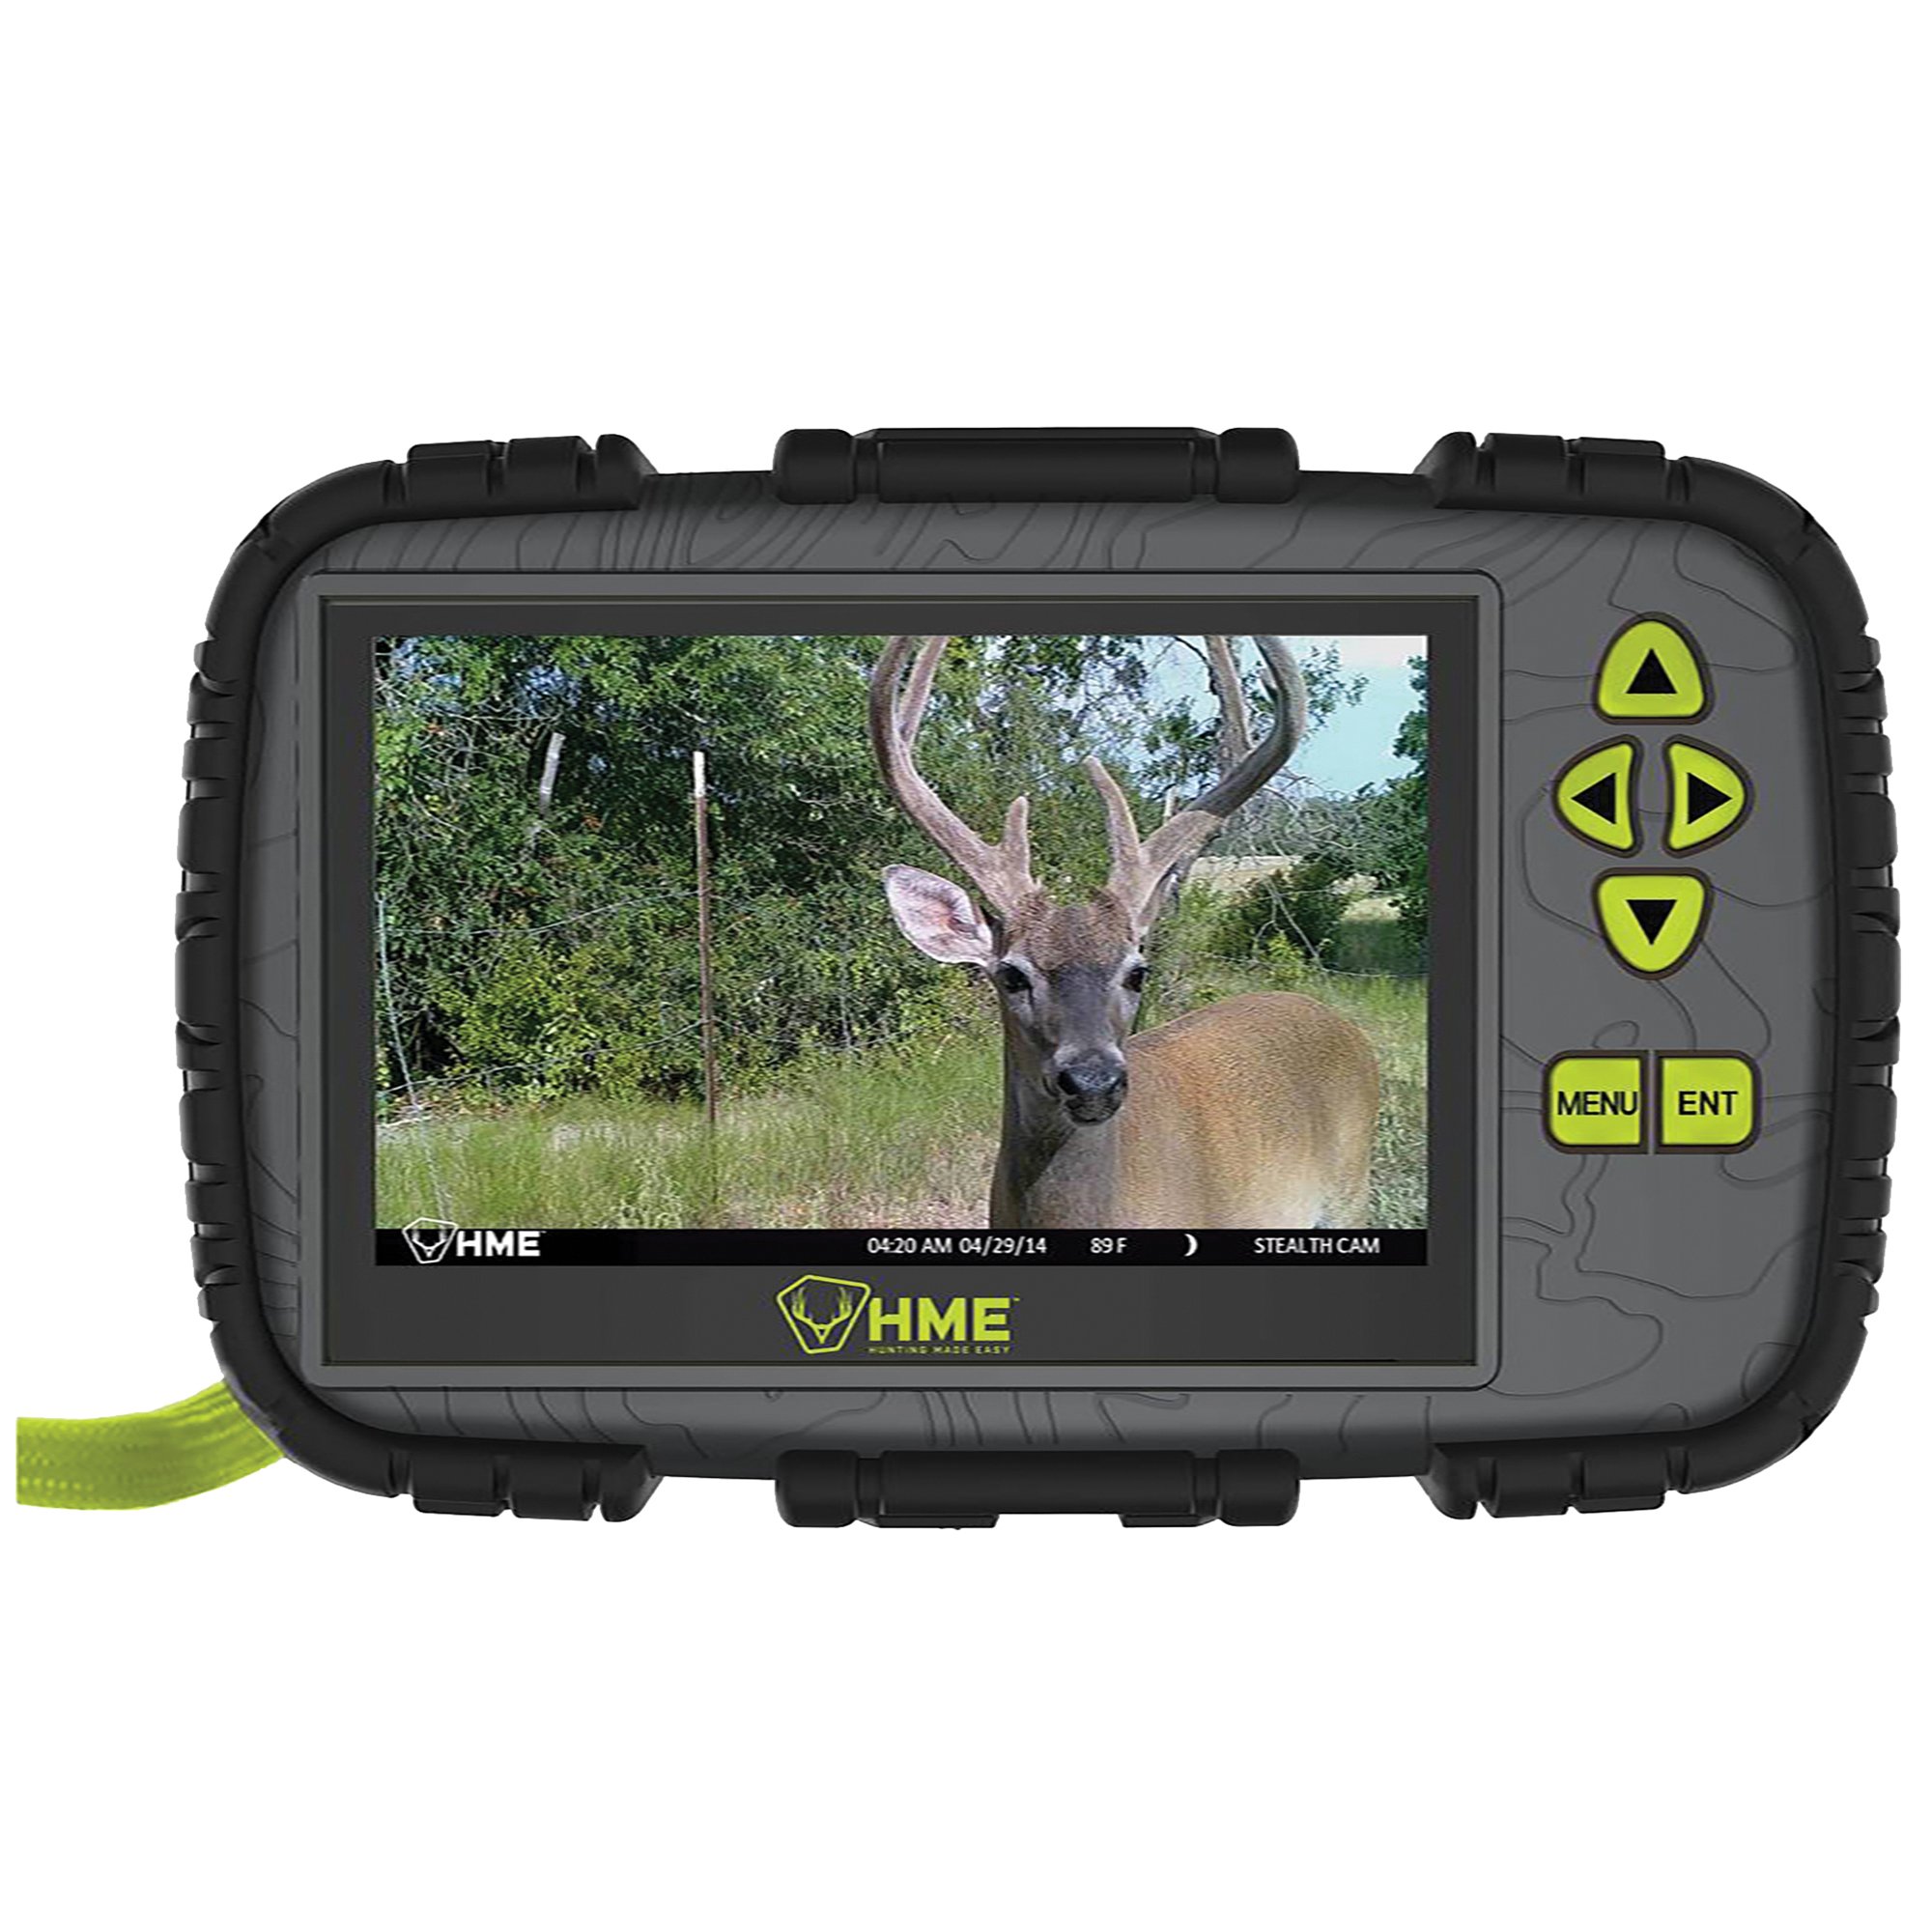 HME HME-CRV43HD -CRV43HD 1080p HD SD Card Reader/Viewer with 4.3-Inch LCD Screen